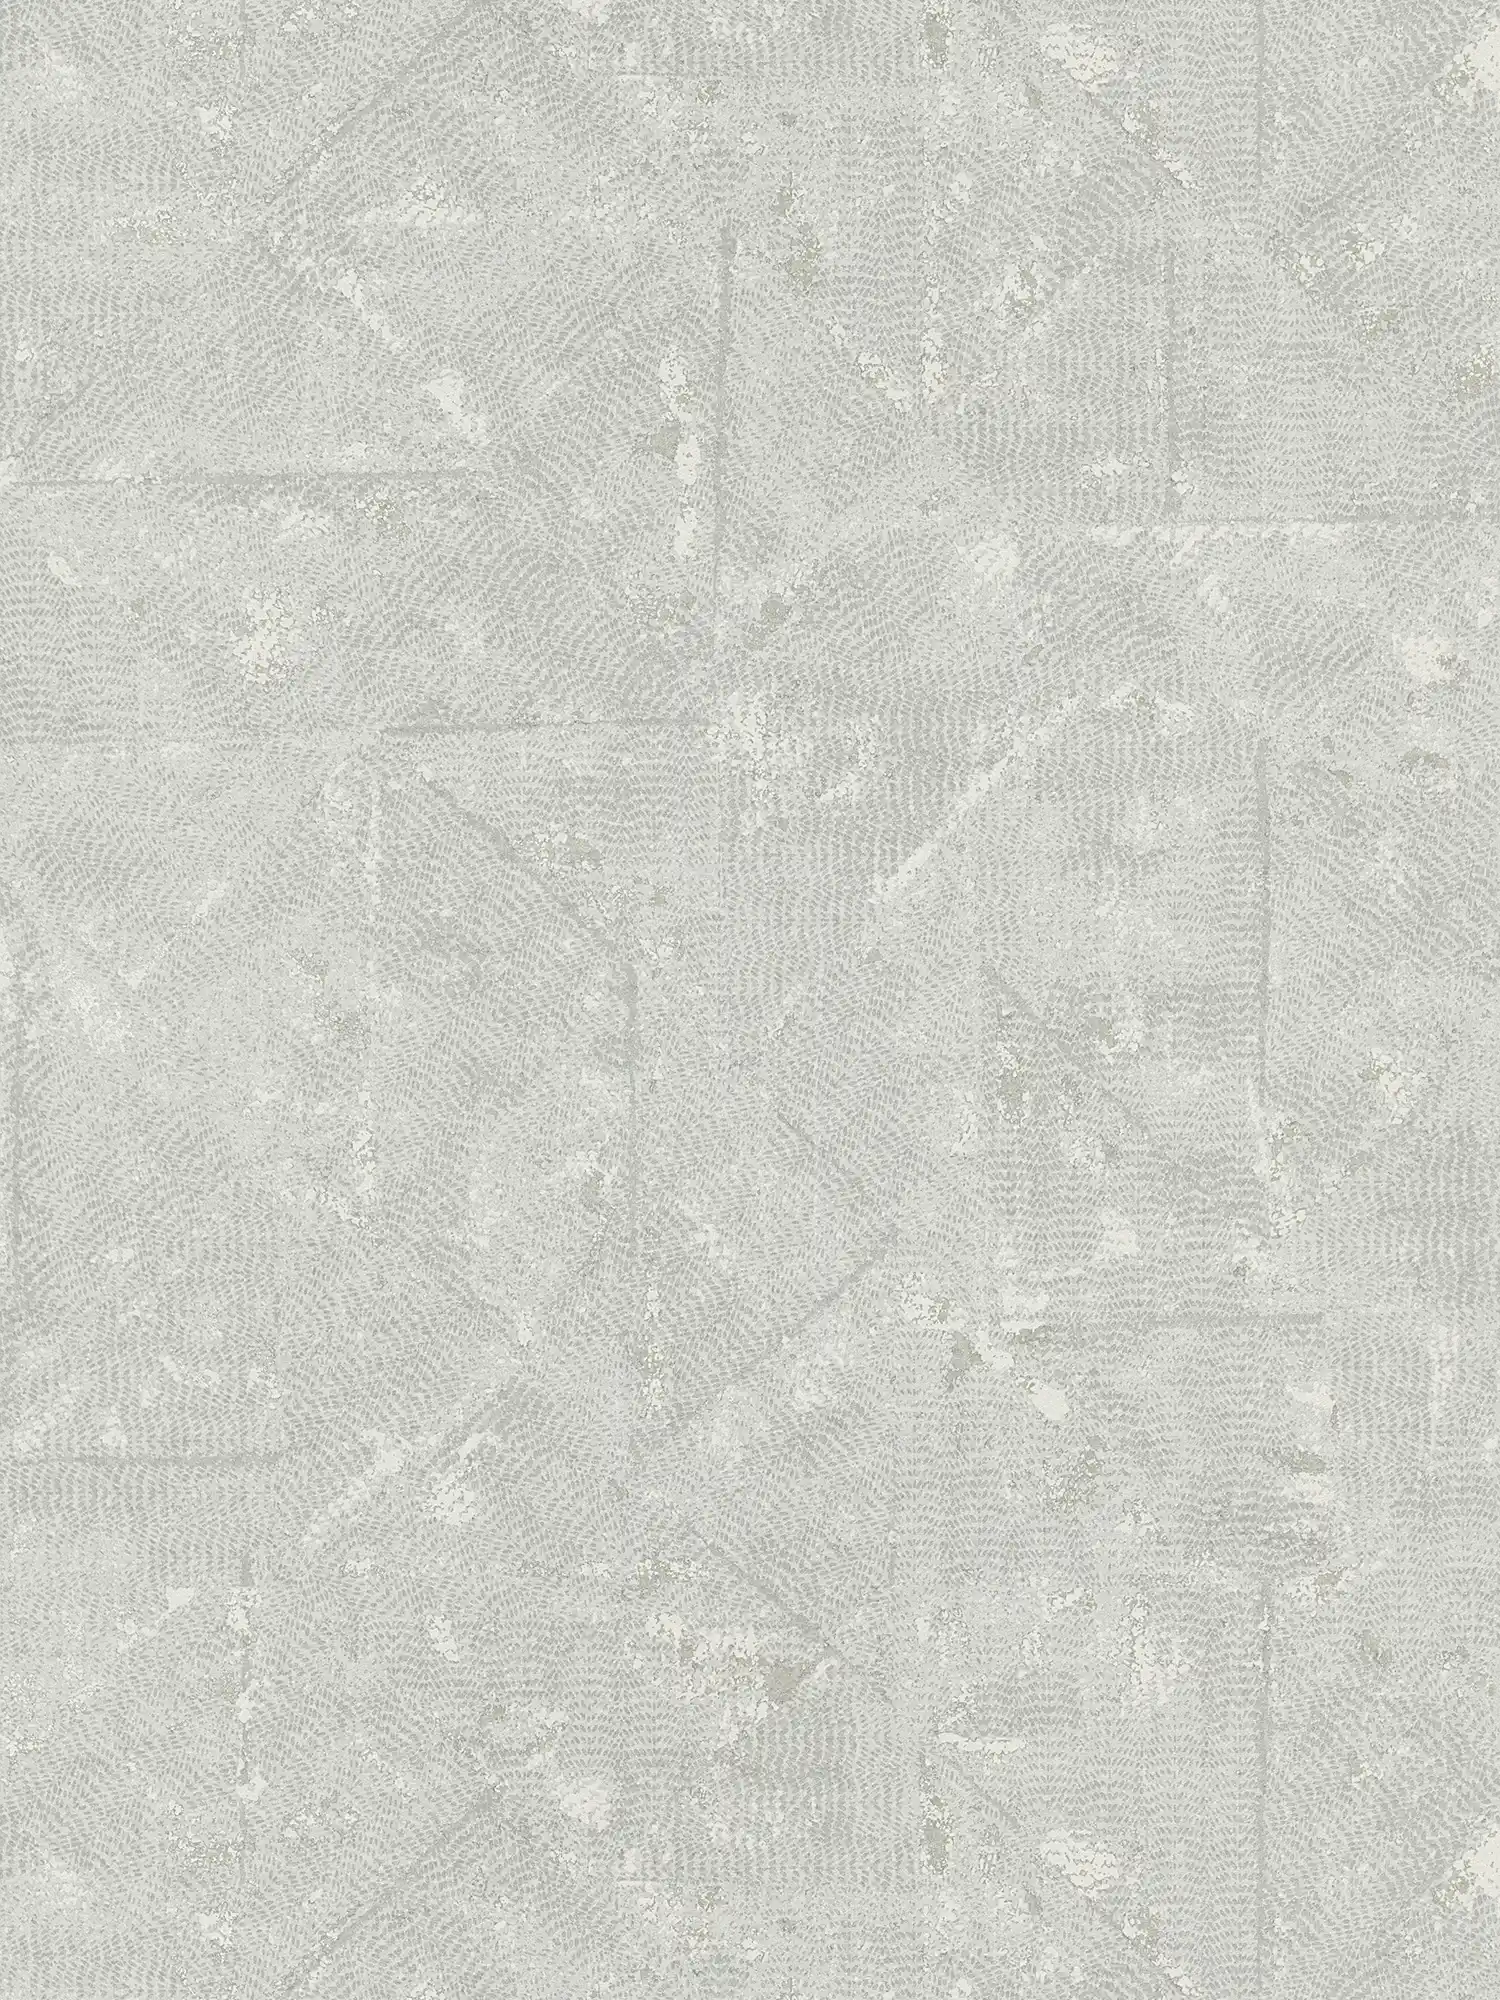 Carta da parati liscia grigio chiaro con dettagli asimmetrici - grigio, argento
